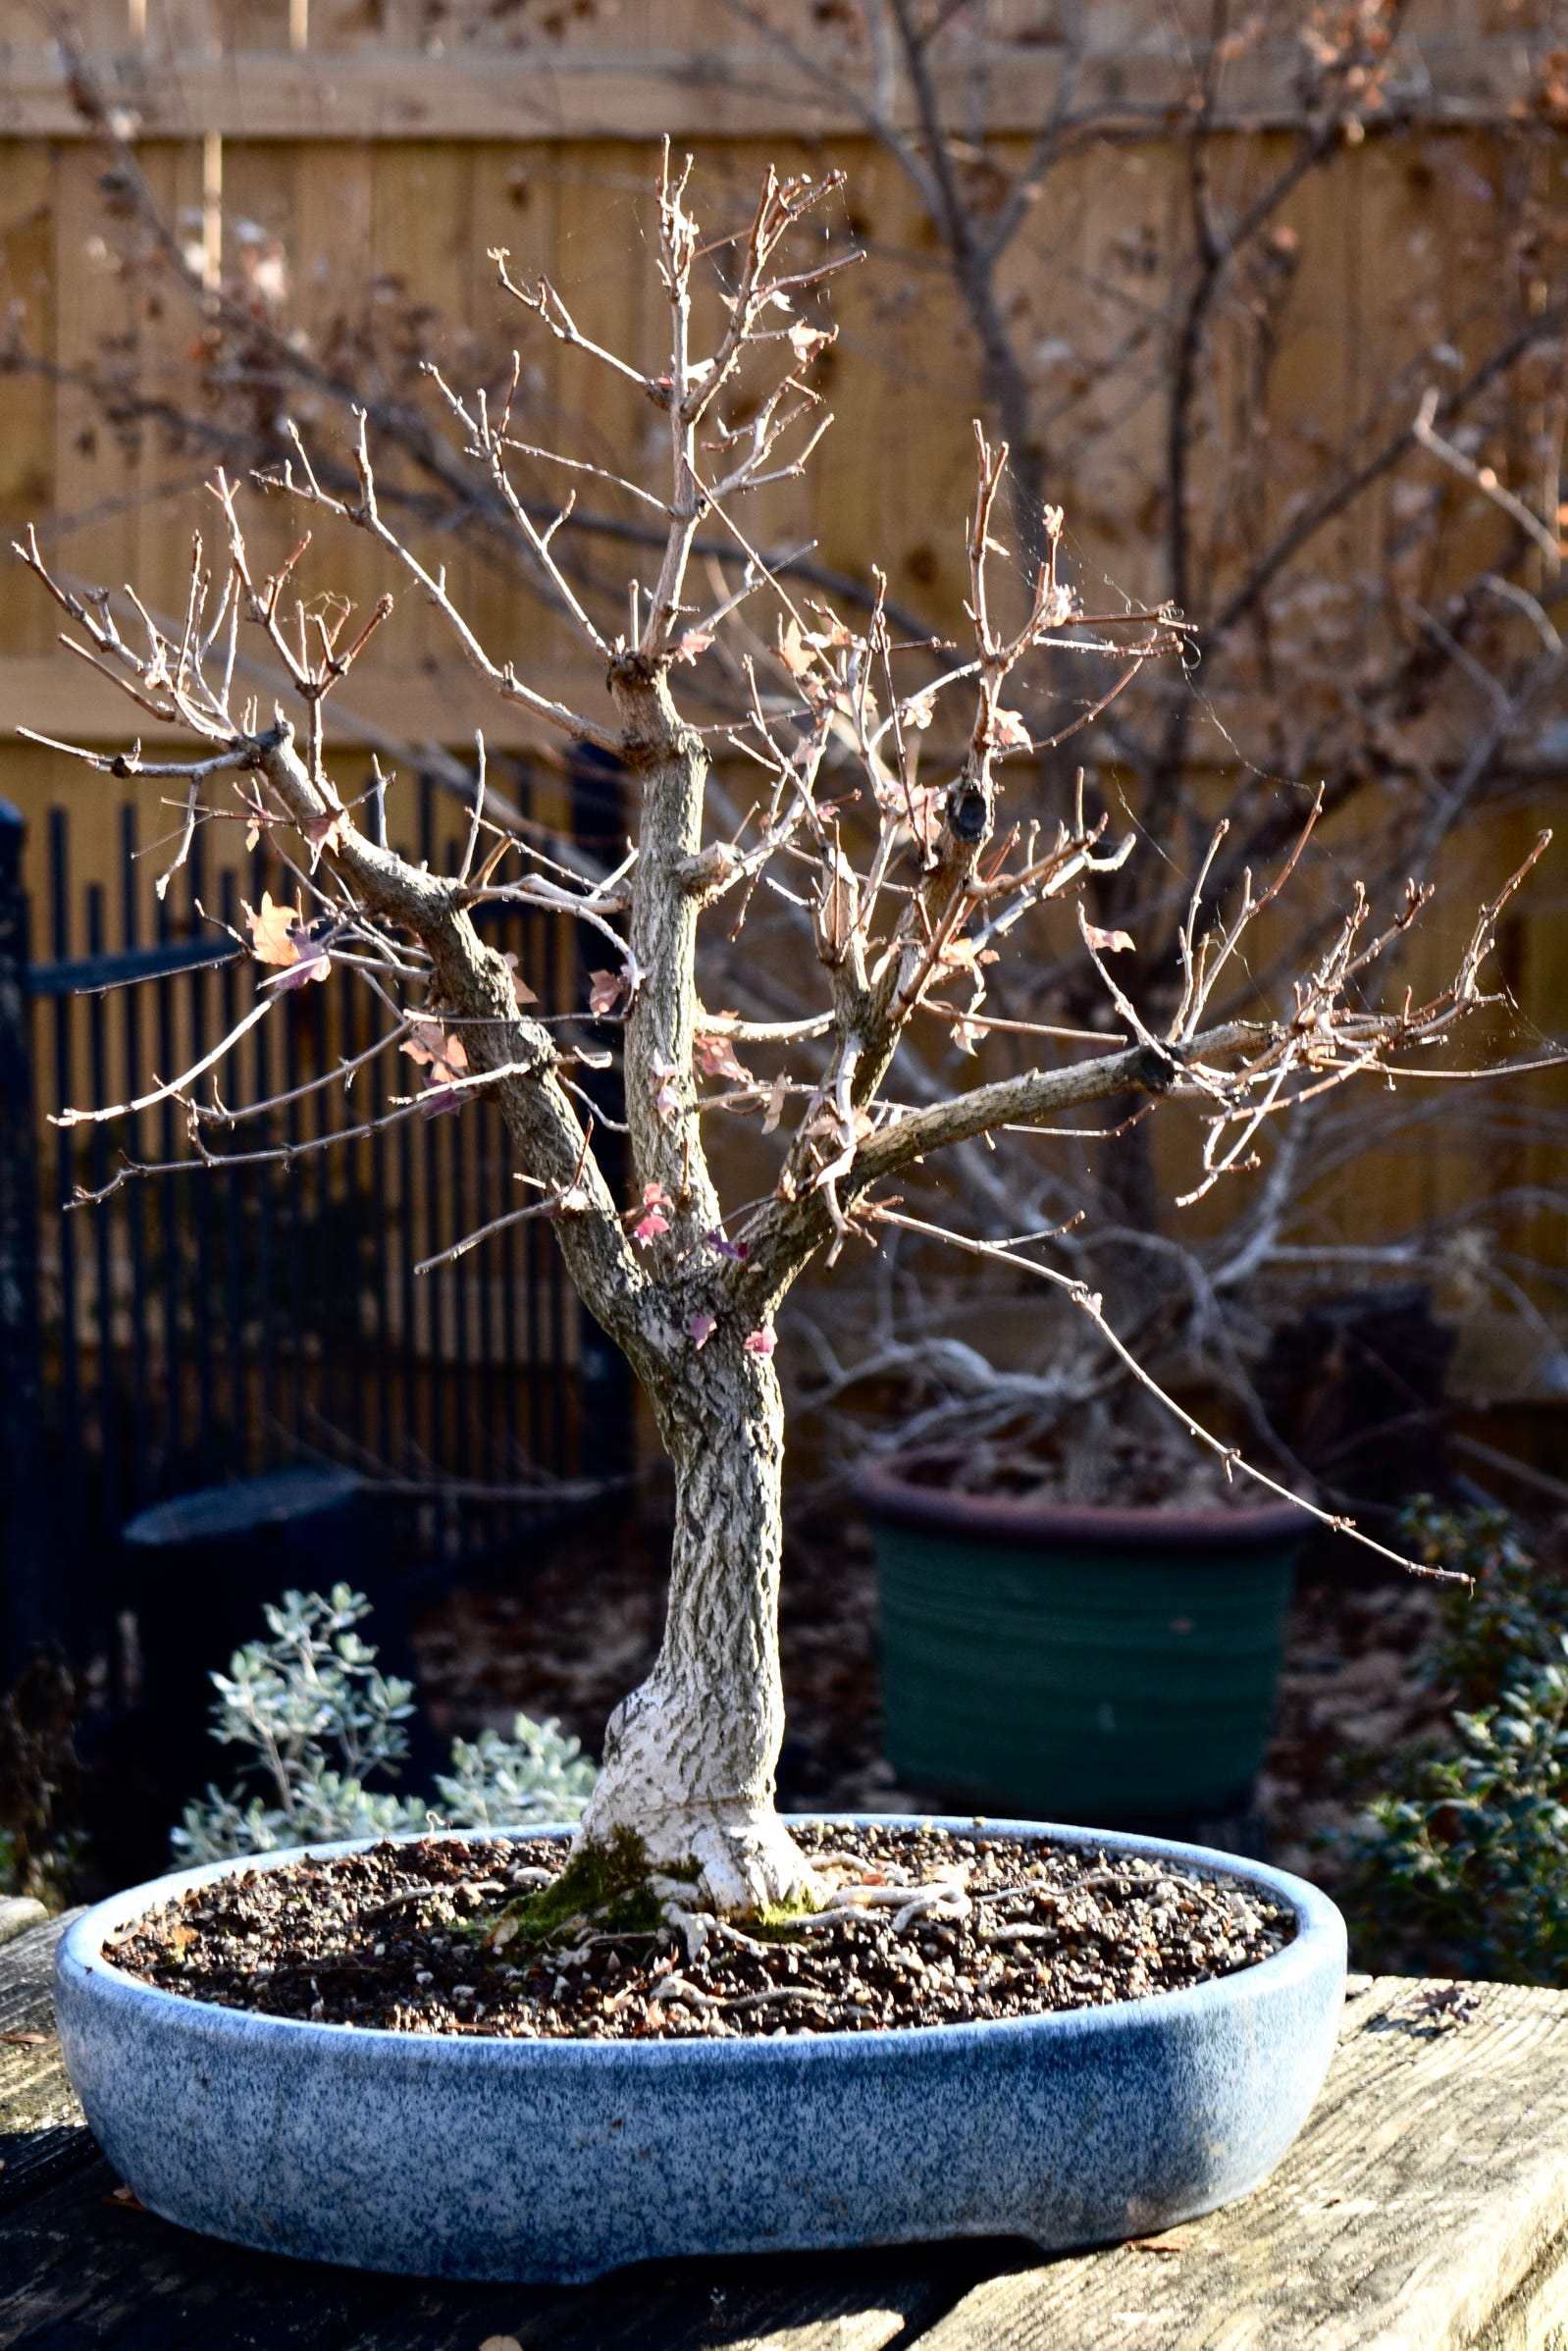 Acer truncatum Shantung Shandong maple dwarf bonsai 2021